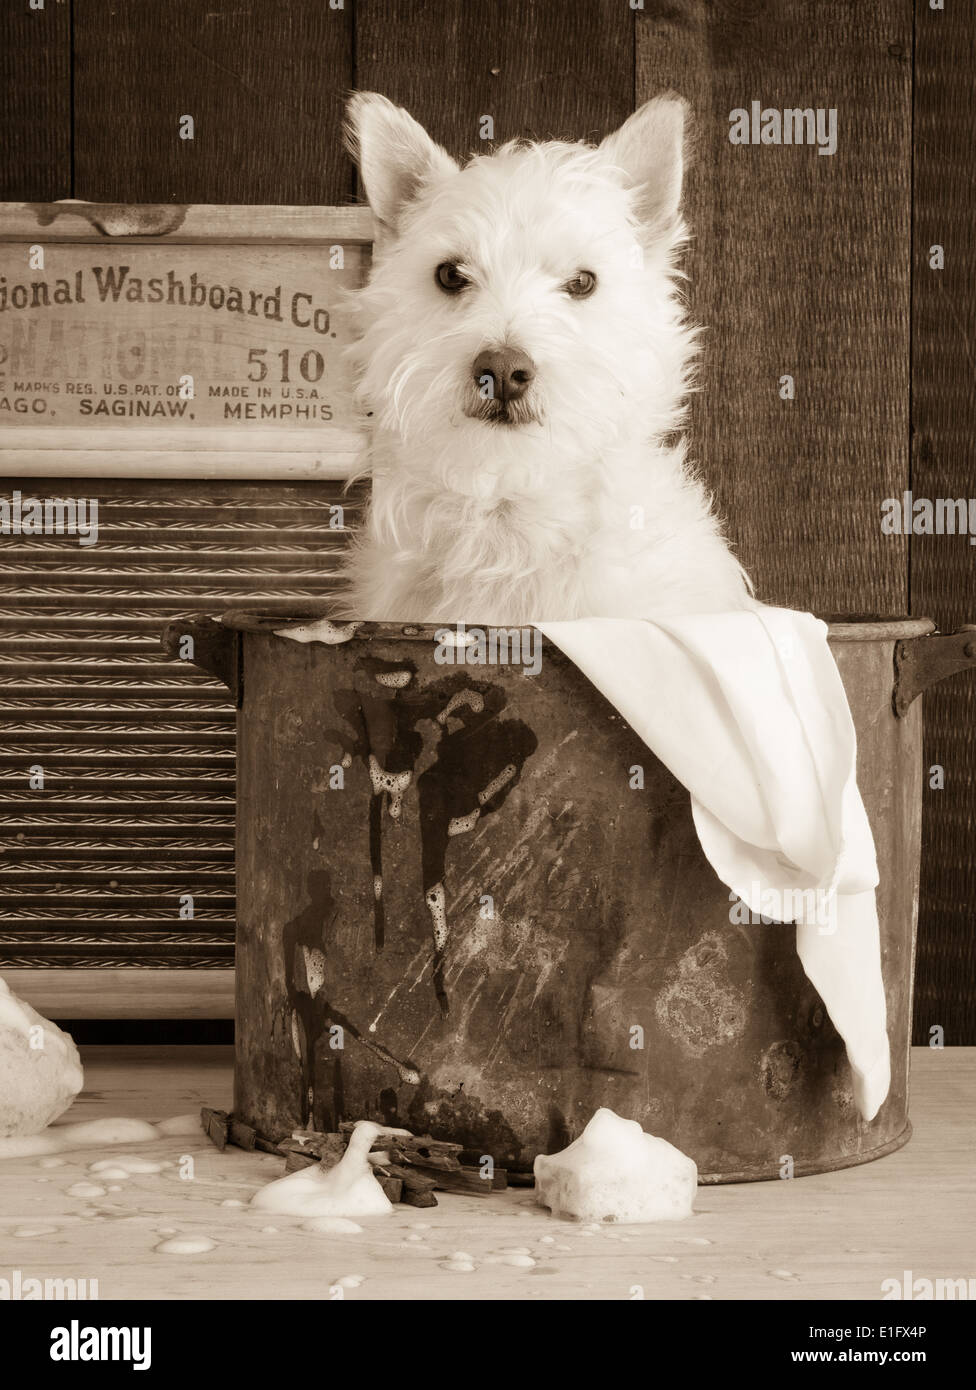 Einen netten kleinen weißen Hund in einer Vintage-Waschung-Wanne im  Sepia-Ton Stockfotografie - Alamy